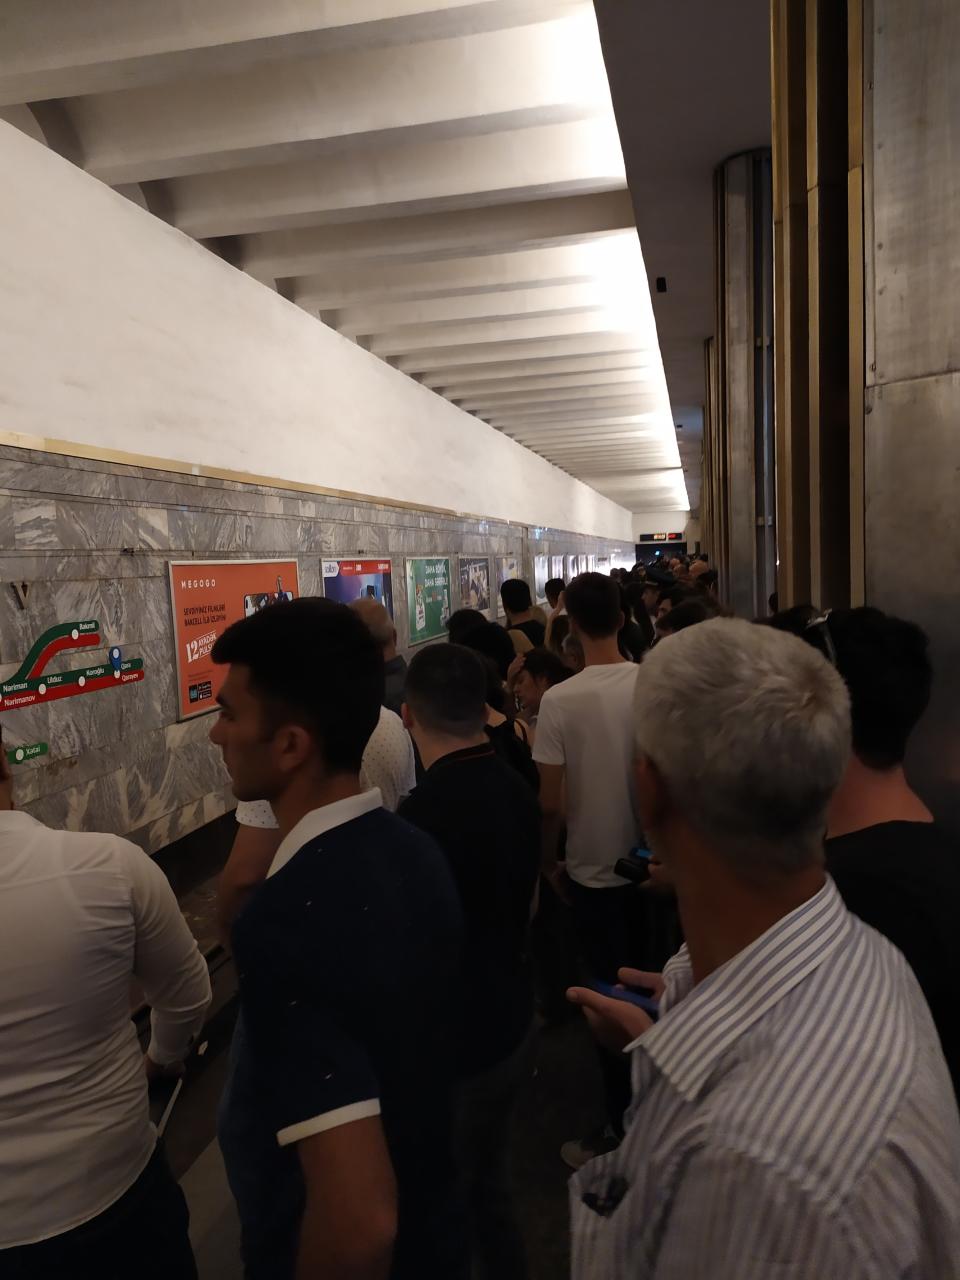 Bakı metrosunda hərəkət İFLİC OLDU - Sərnişinlər qatarda gözlədilər - FOTO